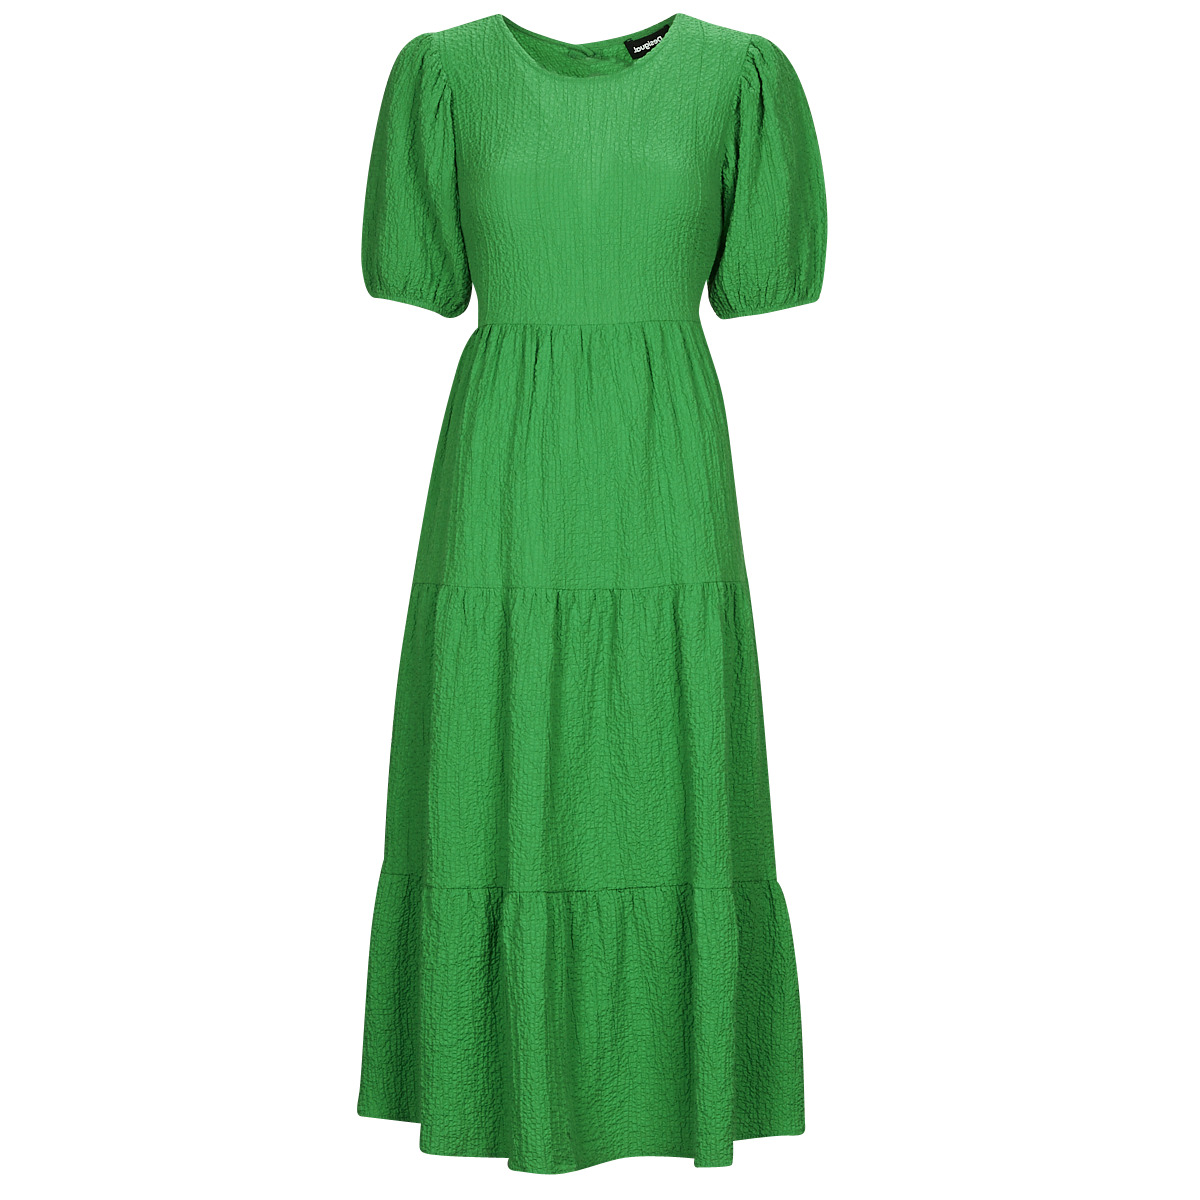 Abbigliamento Donna Abiti lunghi Desigual VEST_WEND Verde